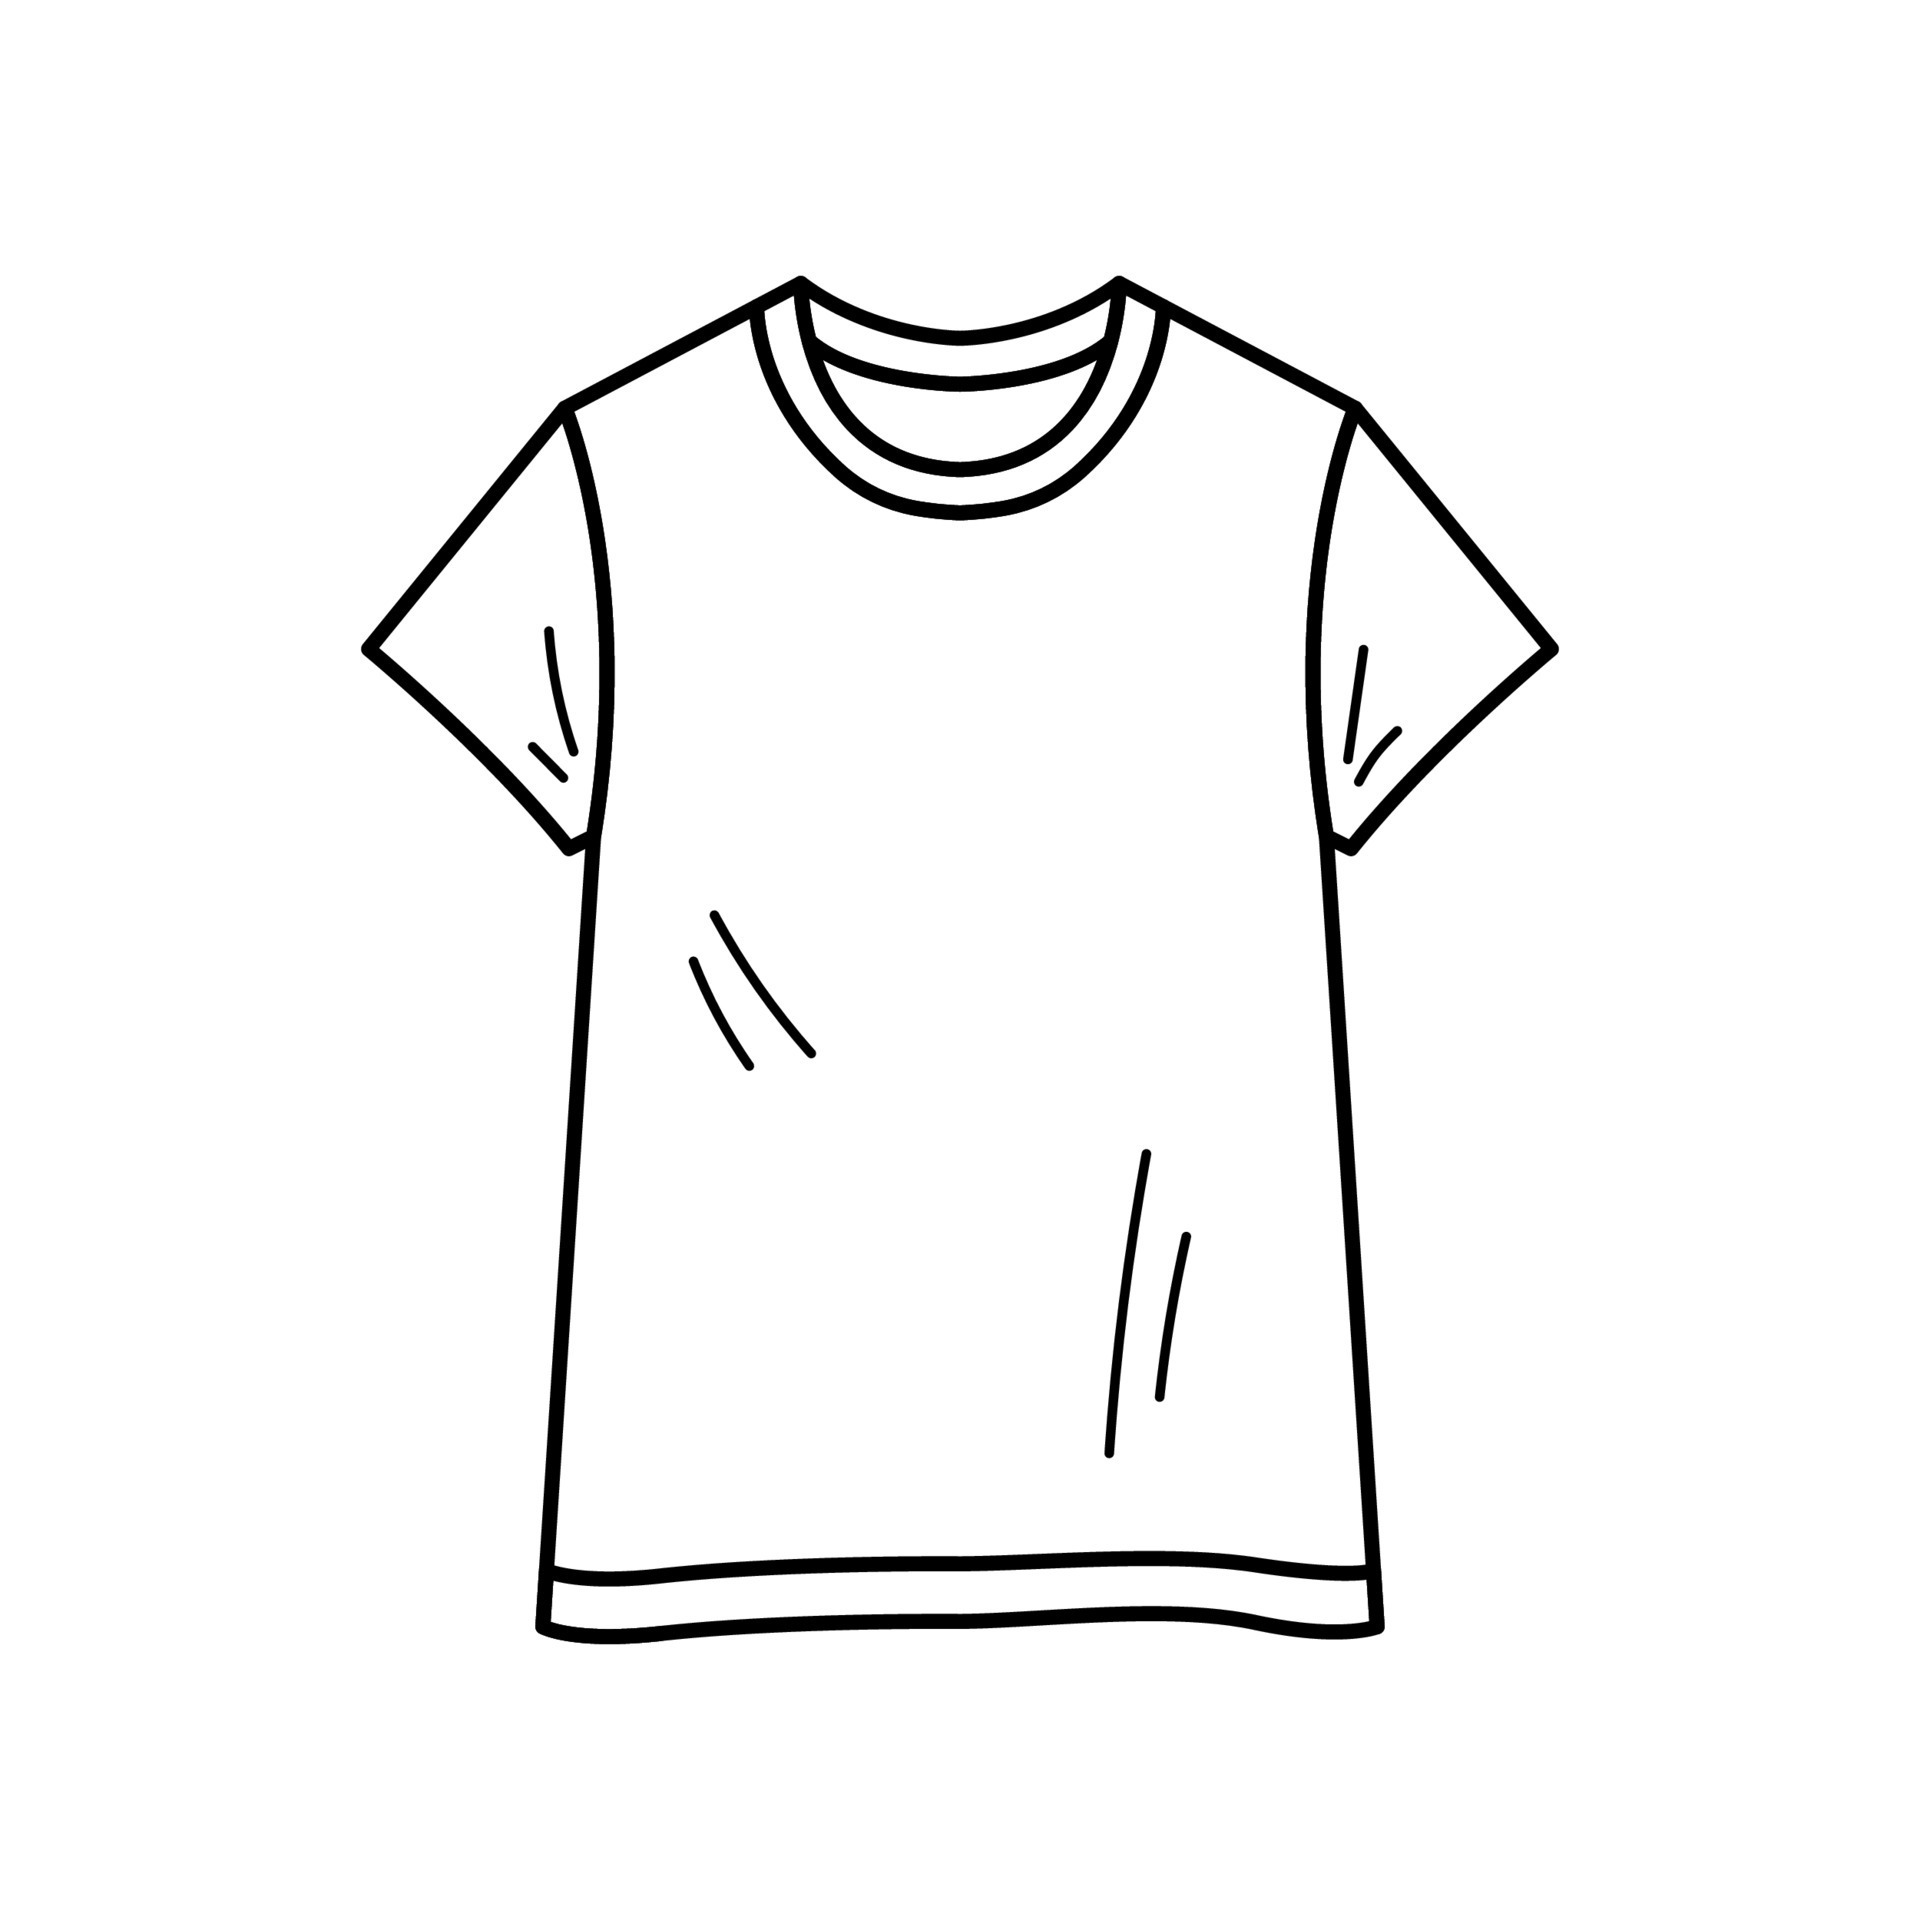 ugyldig Dårlig faktor sprogfærdighed Hand-drawn icon of T-Shirt. Outline symbol. Vector illustration in doodle sketch  style. 7836815 Vector Art at Vecteezy